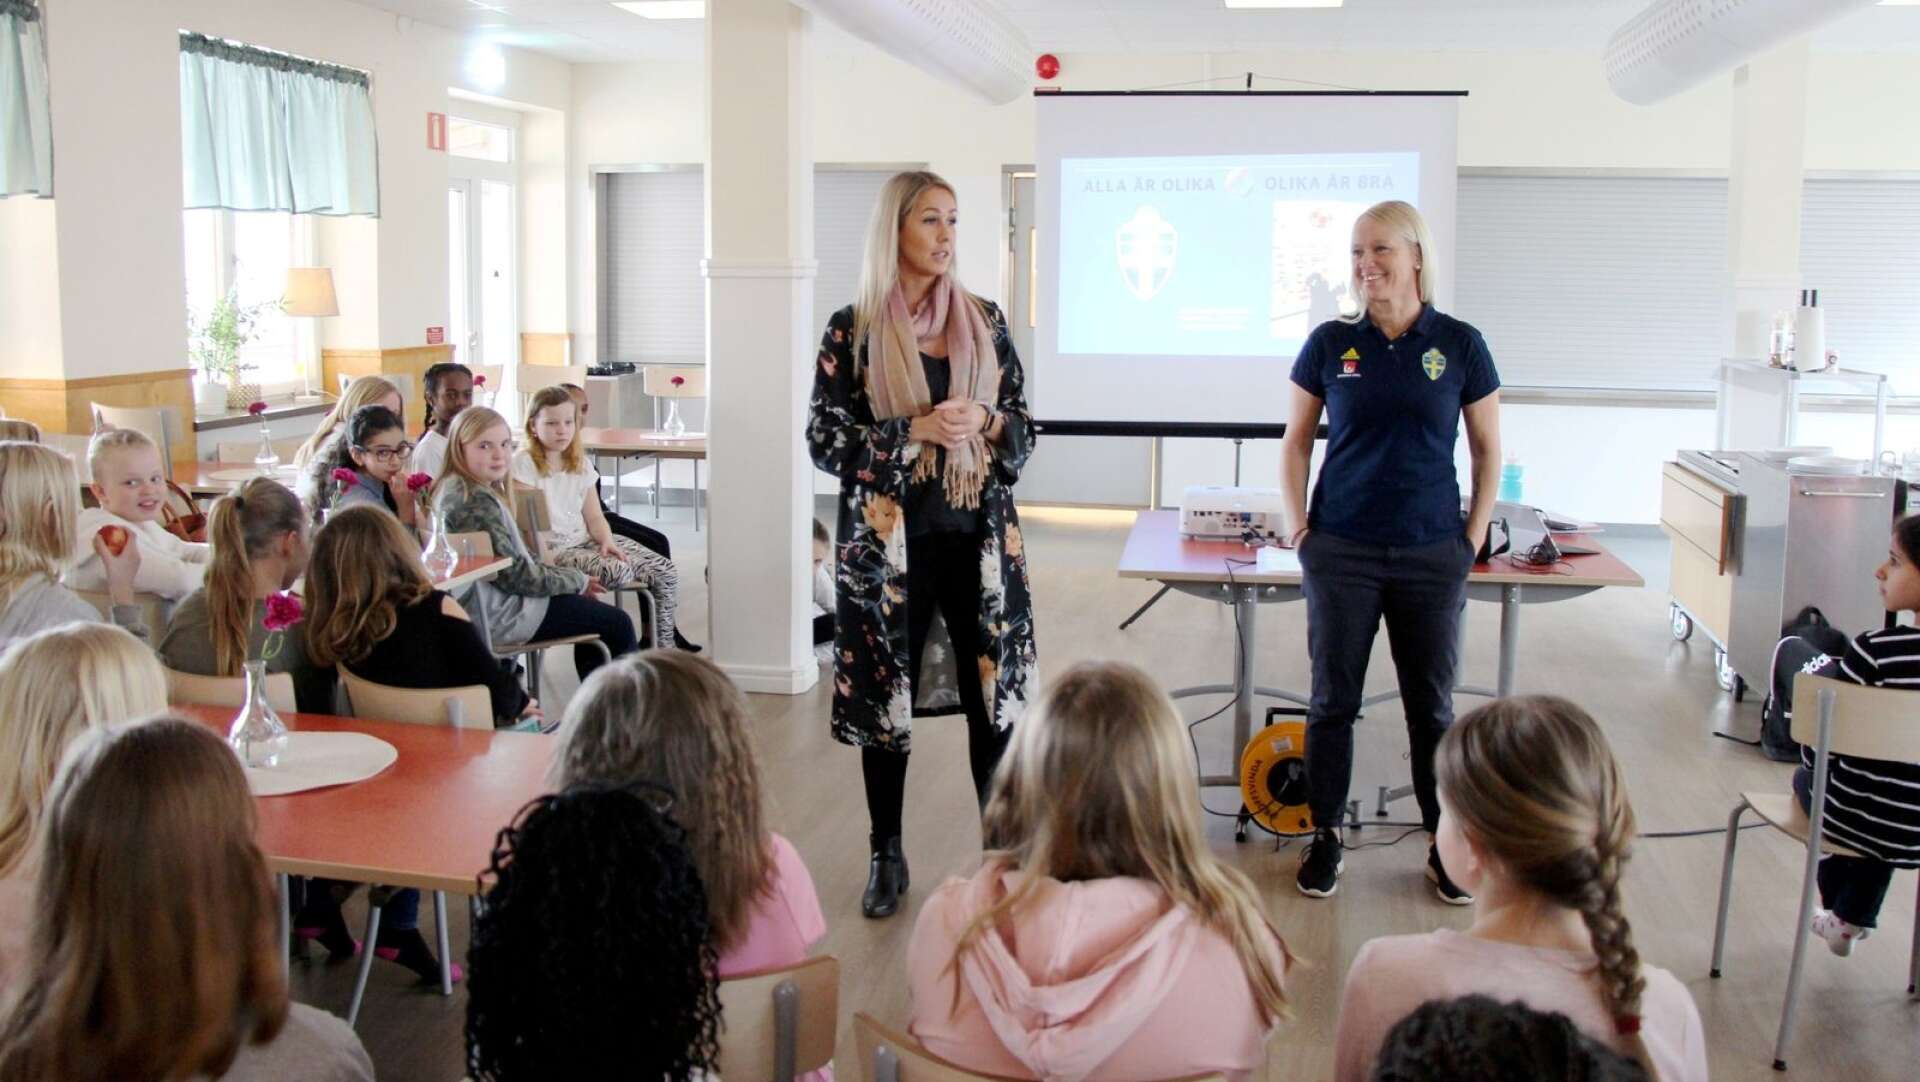 Malin Hjalmarsson, Gullspångs kommun och Anneli Bergdahl, Svenska fotbollsförbundet, presenterar ett integrationsprojekt.